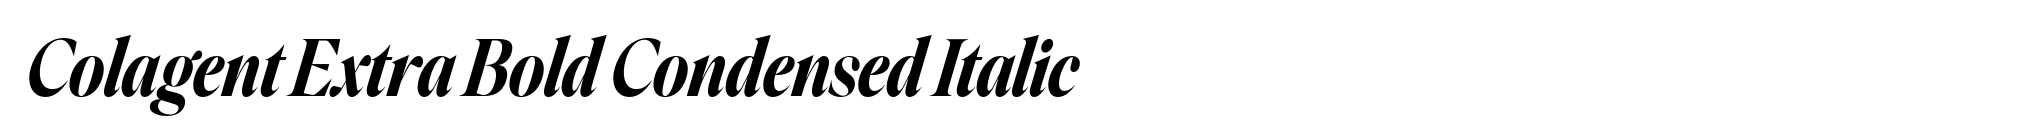 Colagent Extra Bold Condensed Italic image